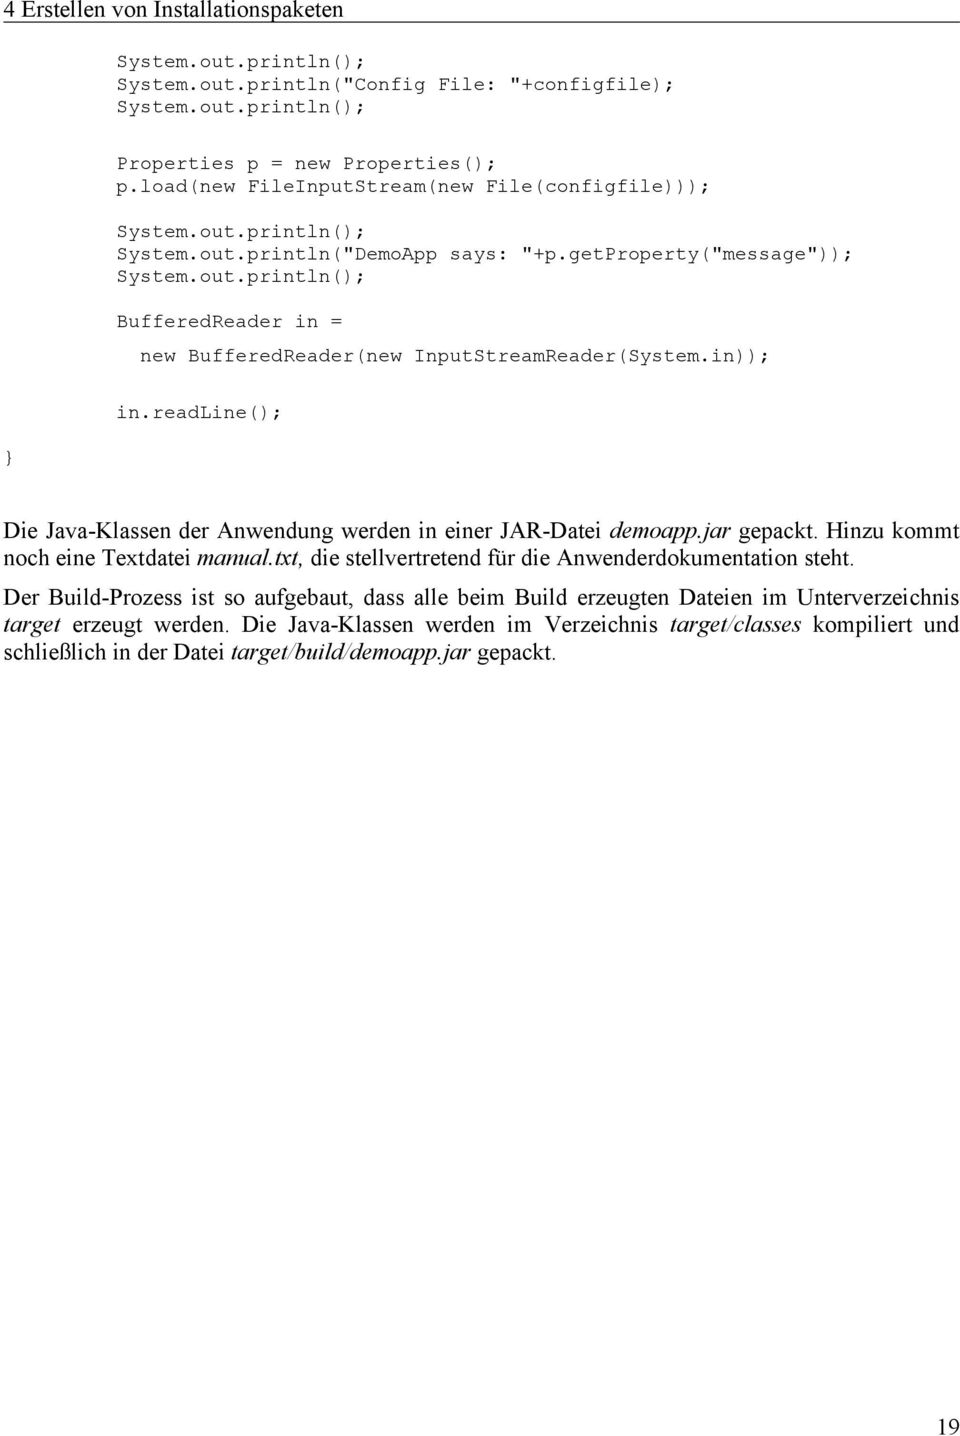 in)); in.readline(); } Die Java-Klassen der Anwendung werden in einer JAR-Datei demoapp.jar gepackt. Hinzu kommt noch eine Textdatei manual.